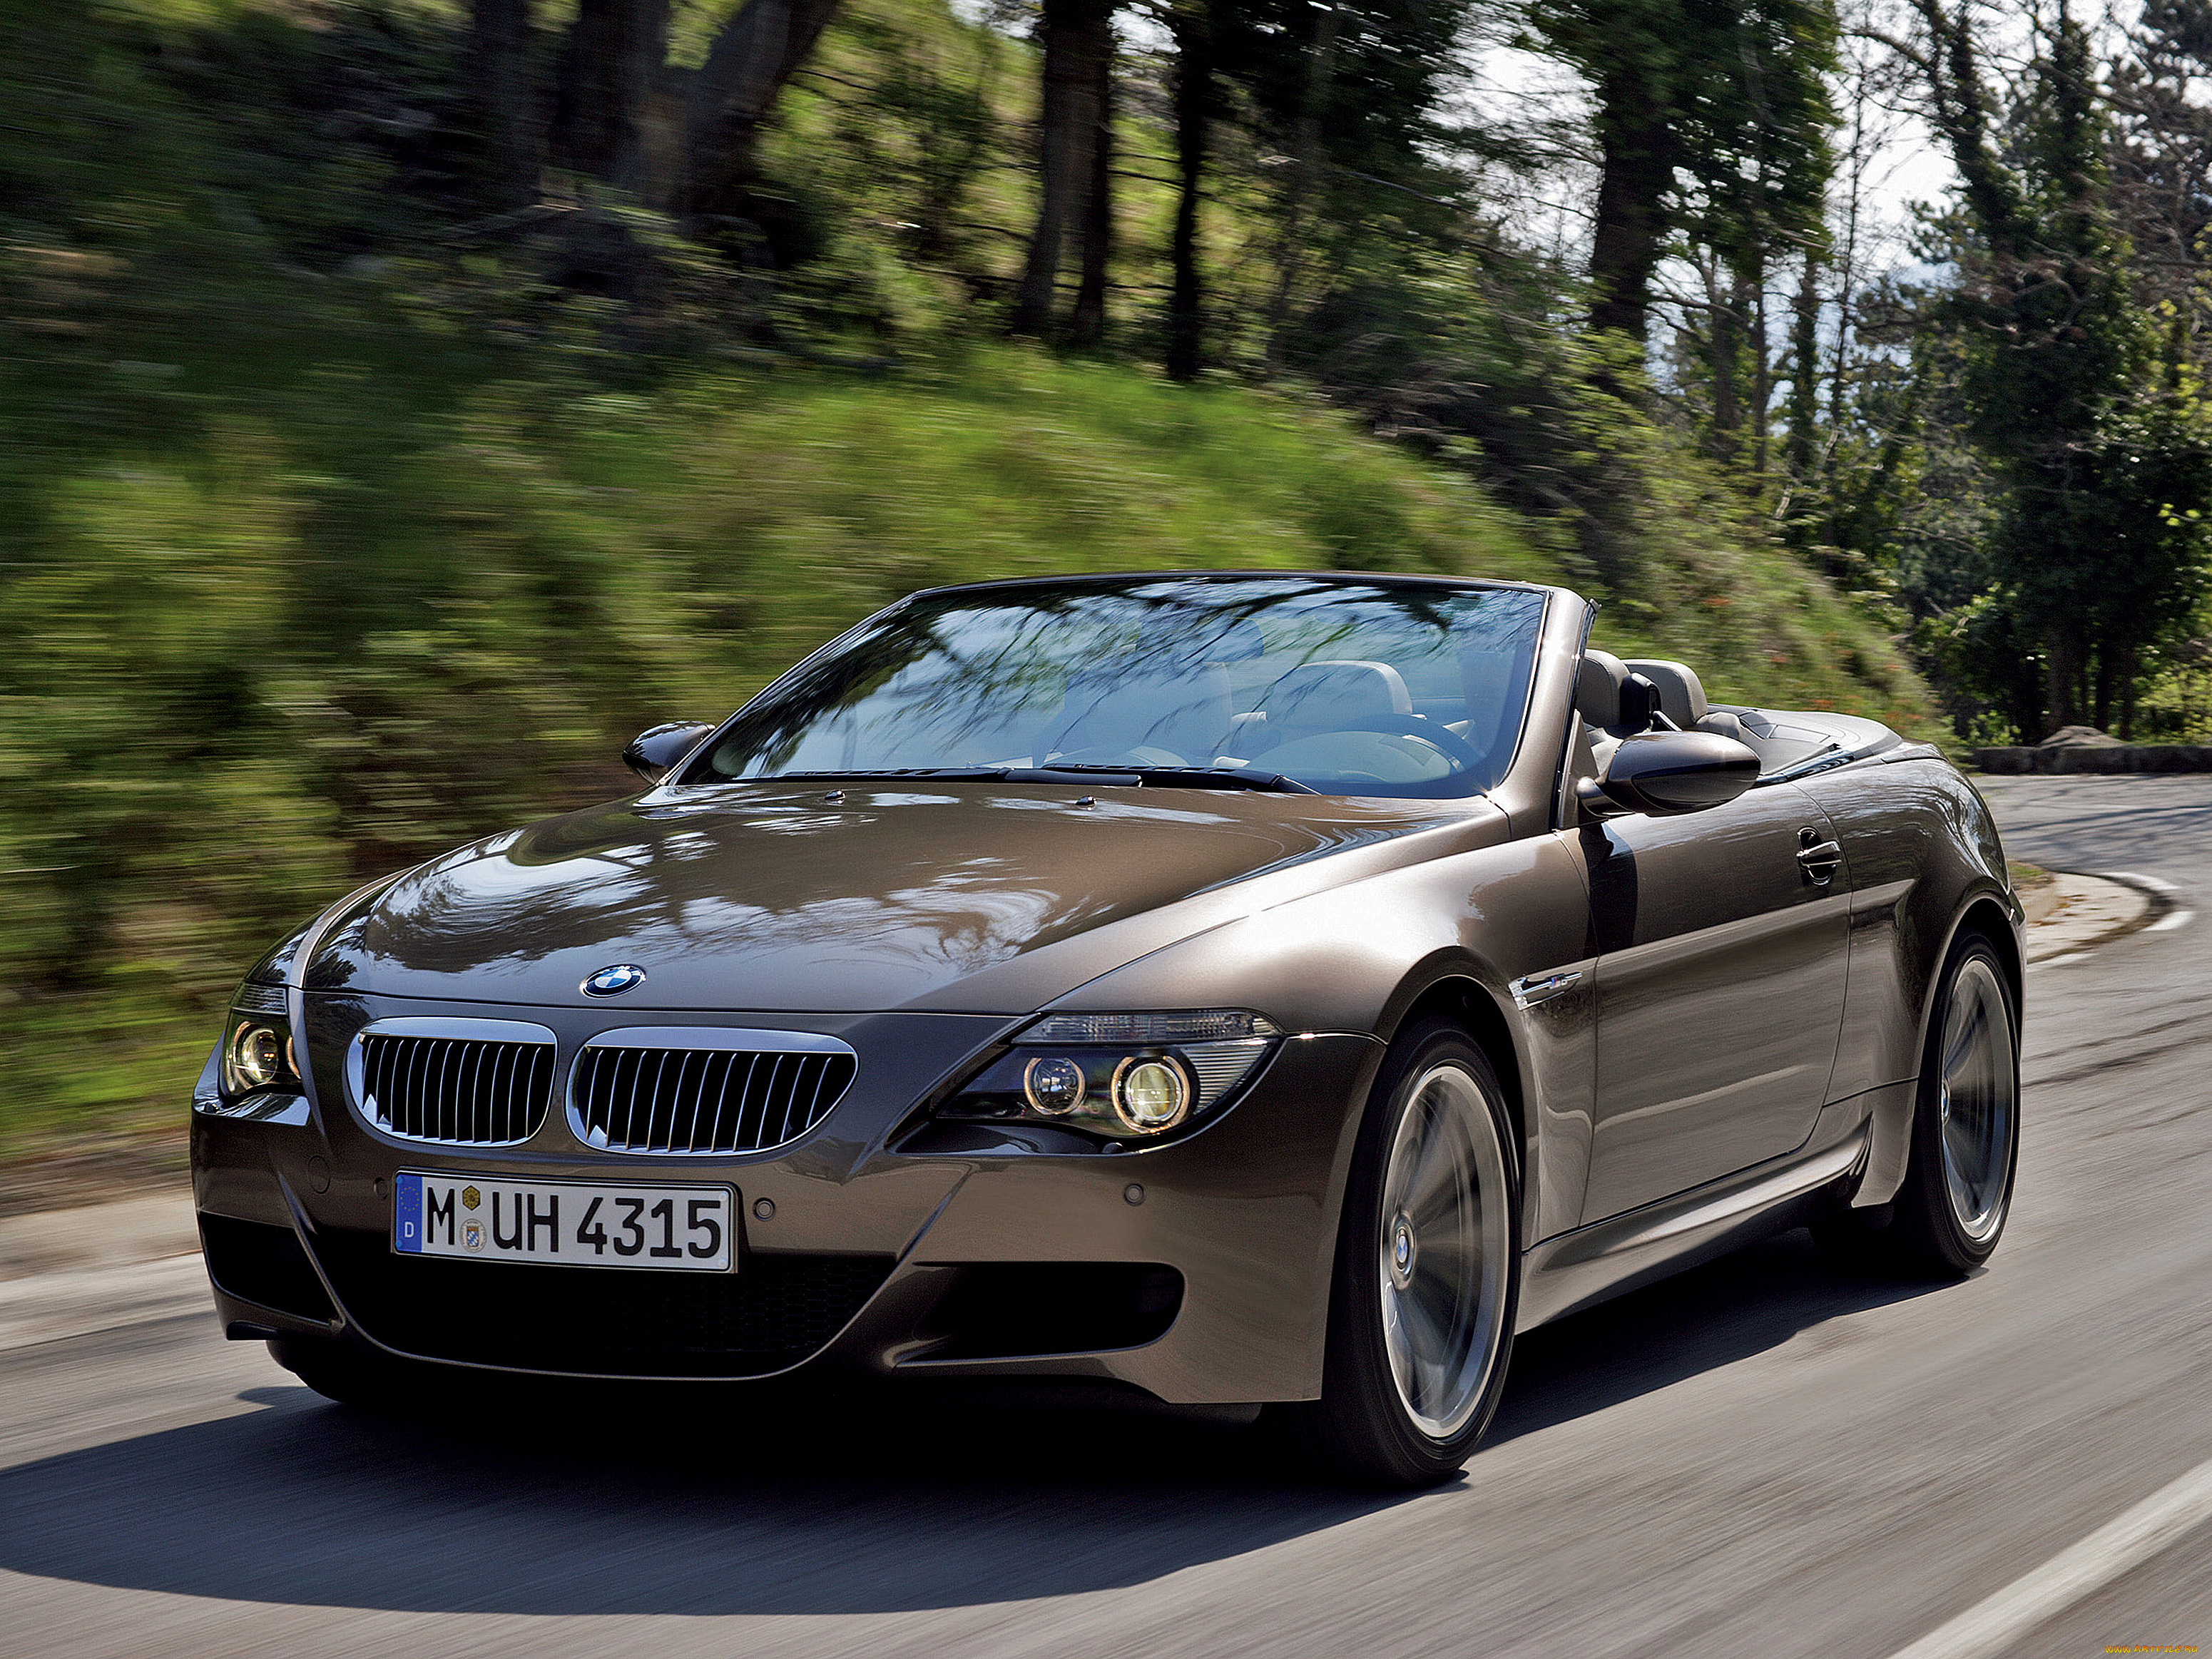 Картинки бмв. BMW m6 Cabrio. BMW m6 e64. BMW m6 Convertible 2007. BMW e63 Cabrio.